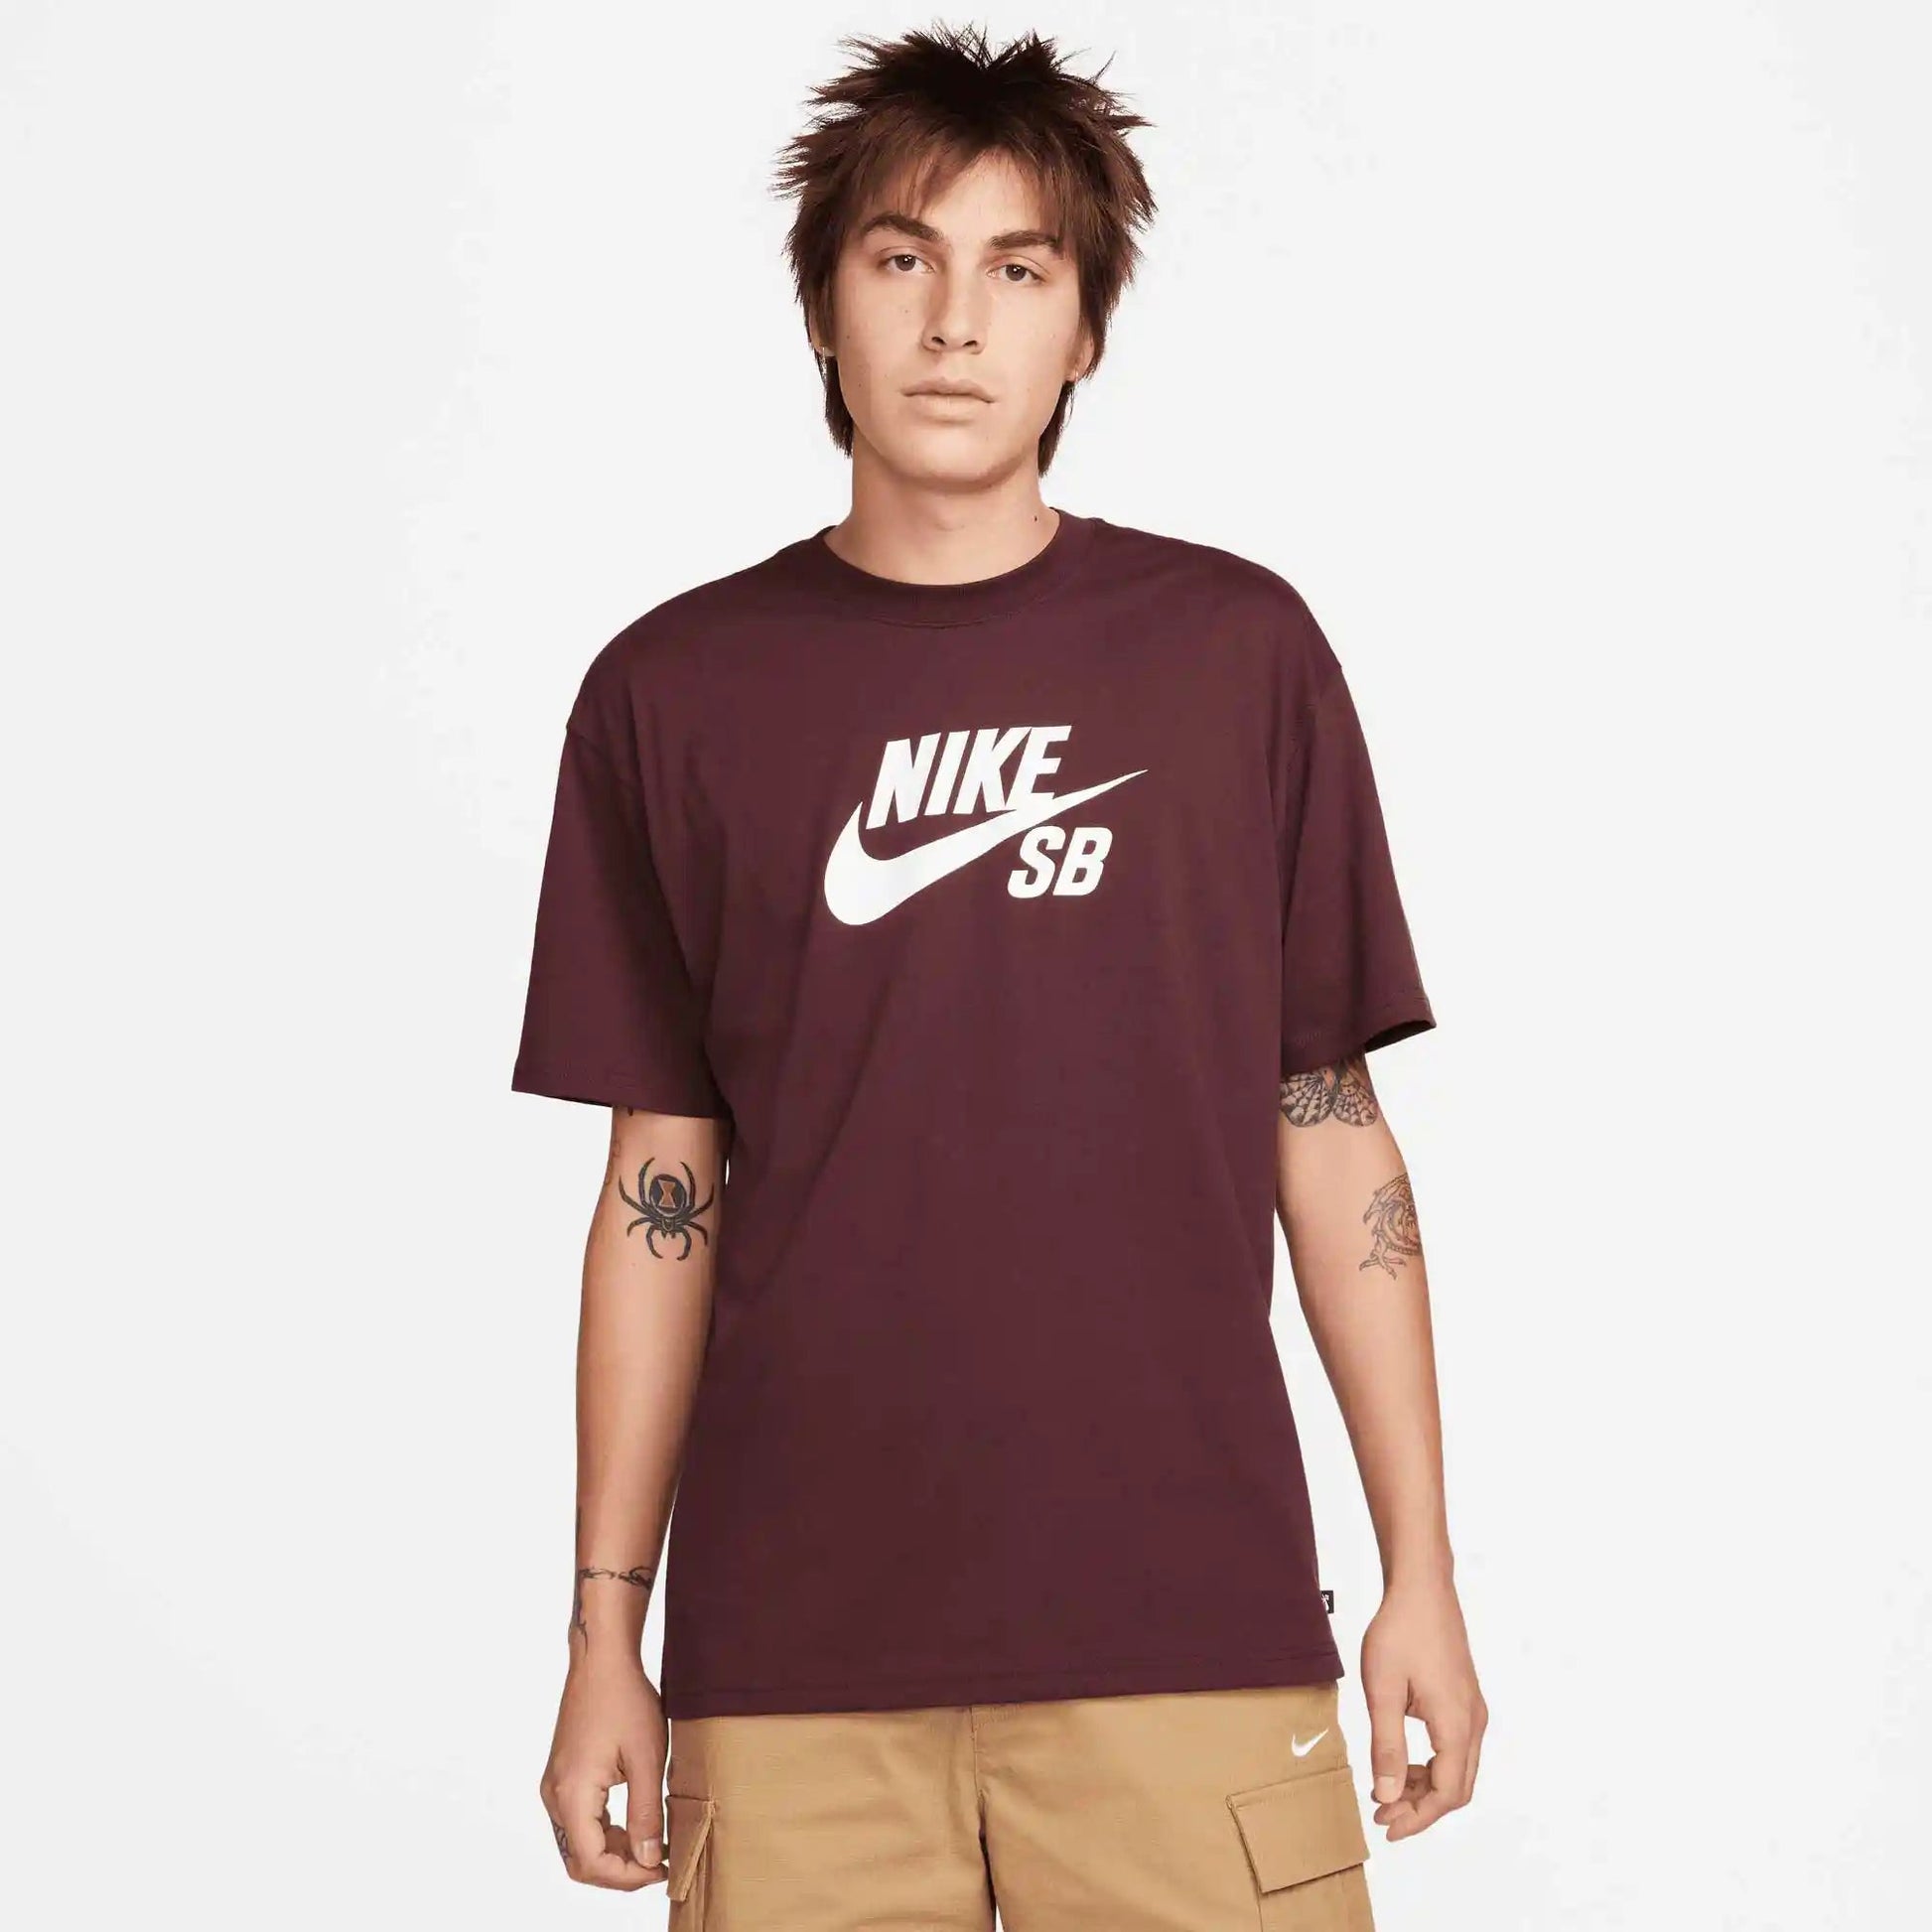 Nike SB Logo Skate T-Shirt, burgundy crush/white - Tiki Room Skateboards - 1